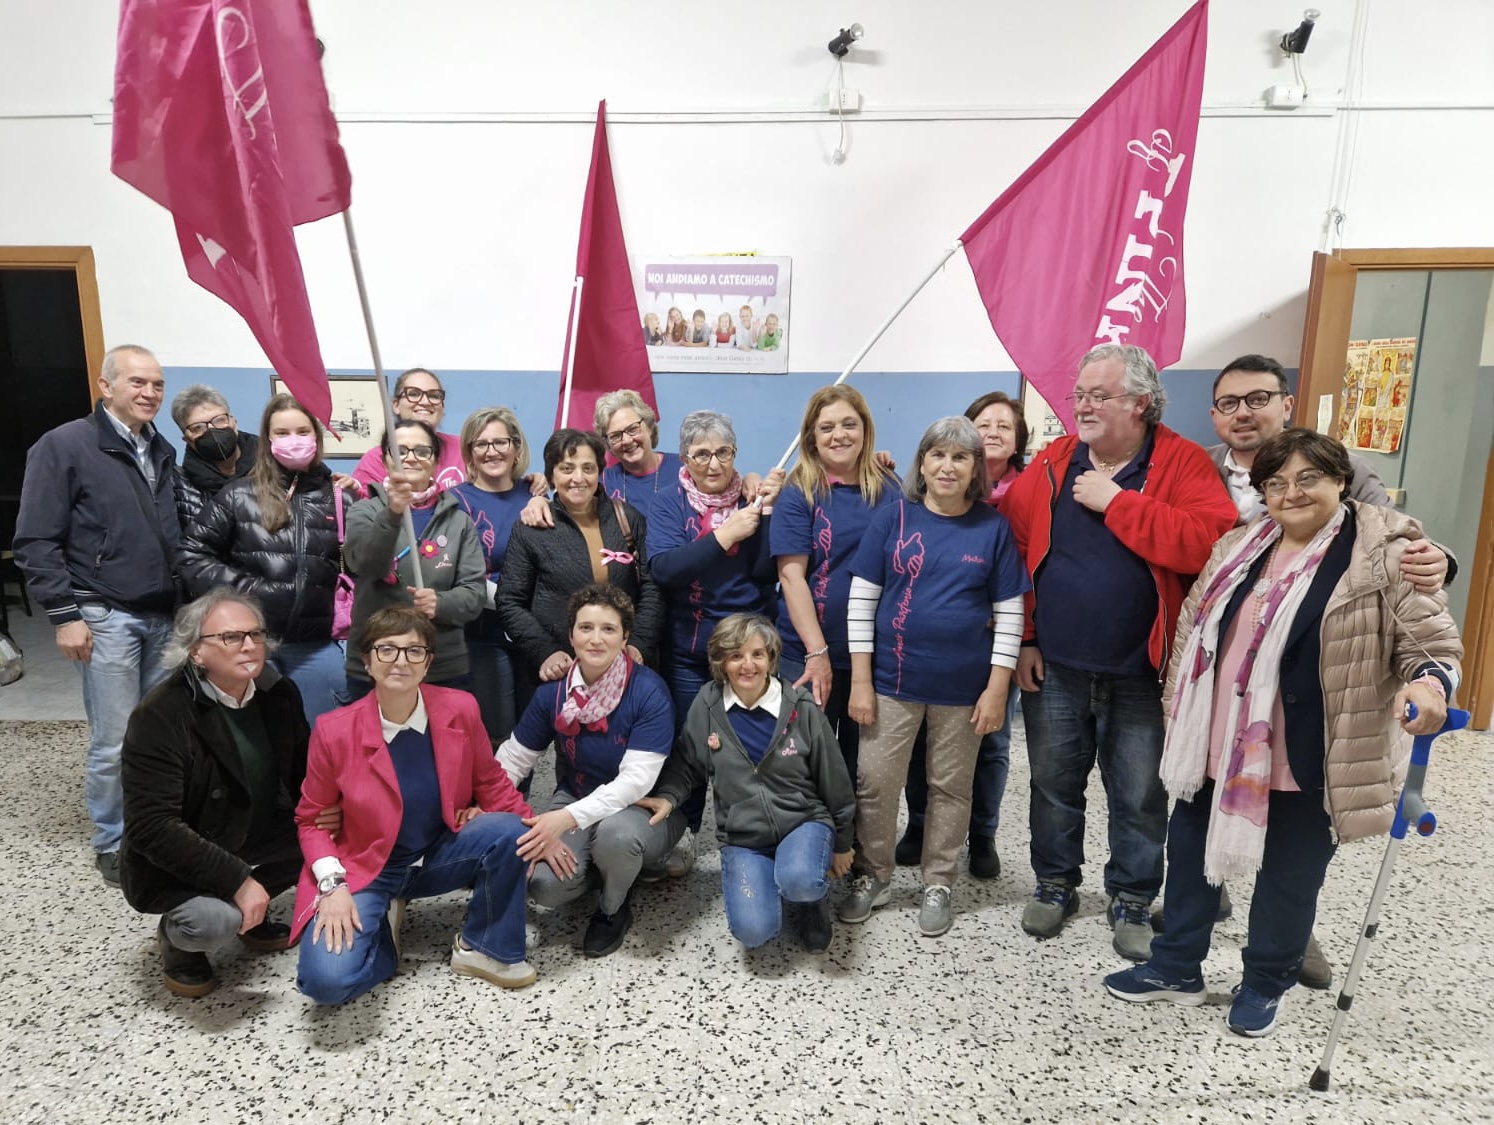 Mercogliano| Prevenzione in rosa, con Amos Partenio nella sede della Caritas 130 visite gratuite